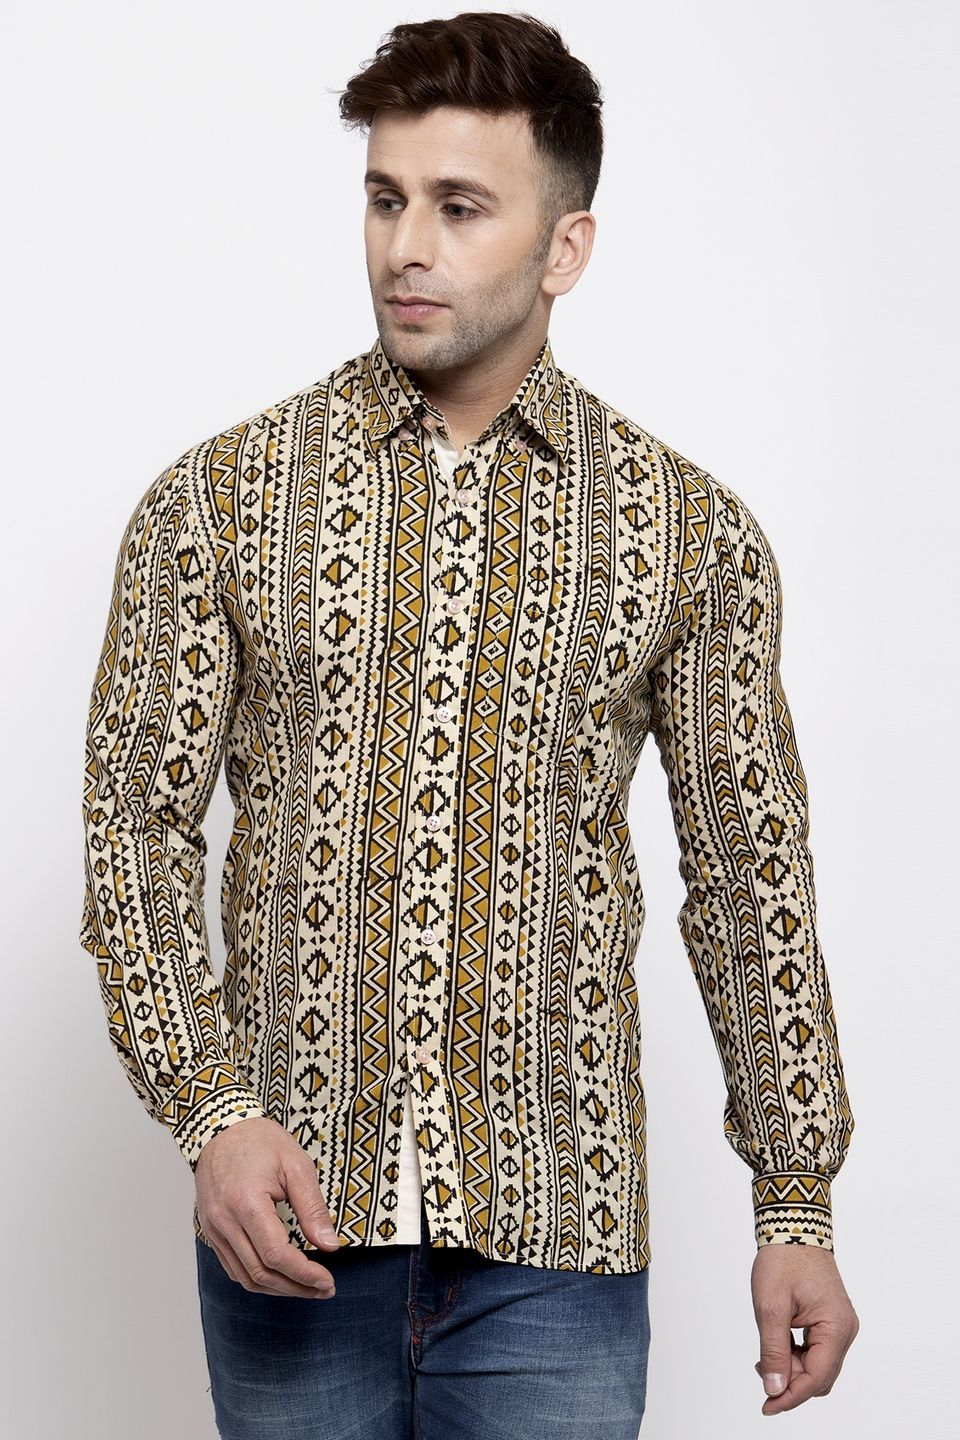 Wintage Men's Jaipur Cotton Tropical Hawaiian Batik Casual Shirt: Camel